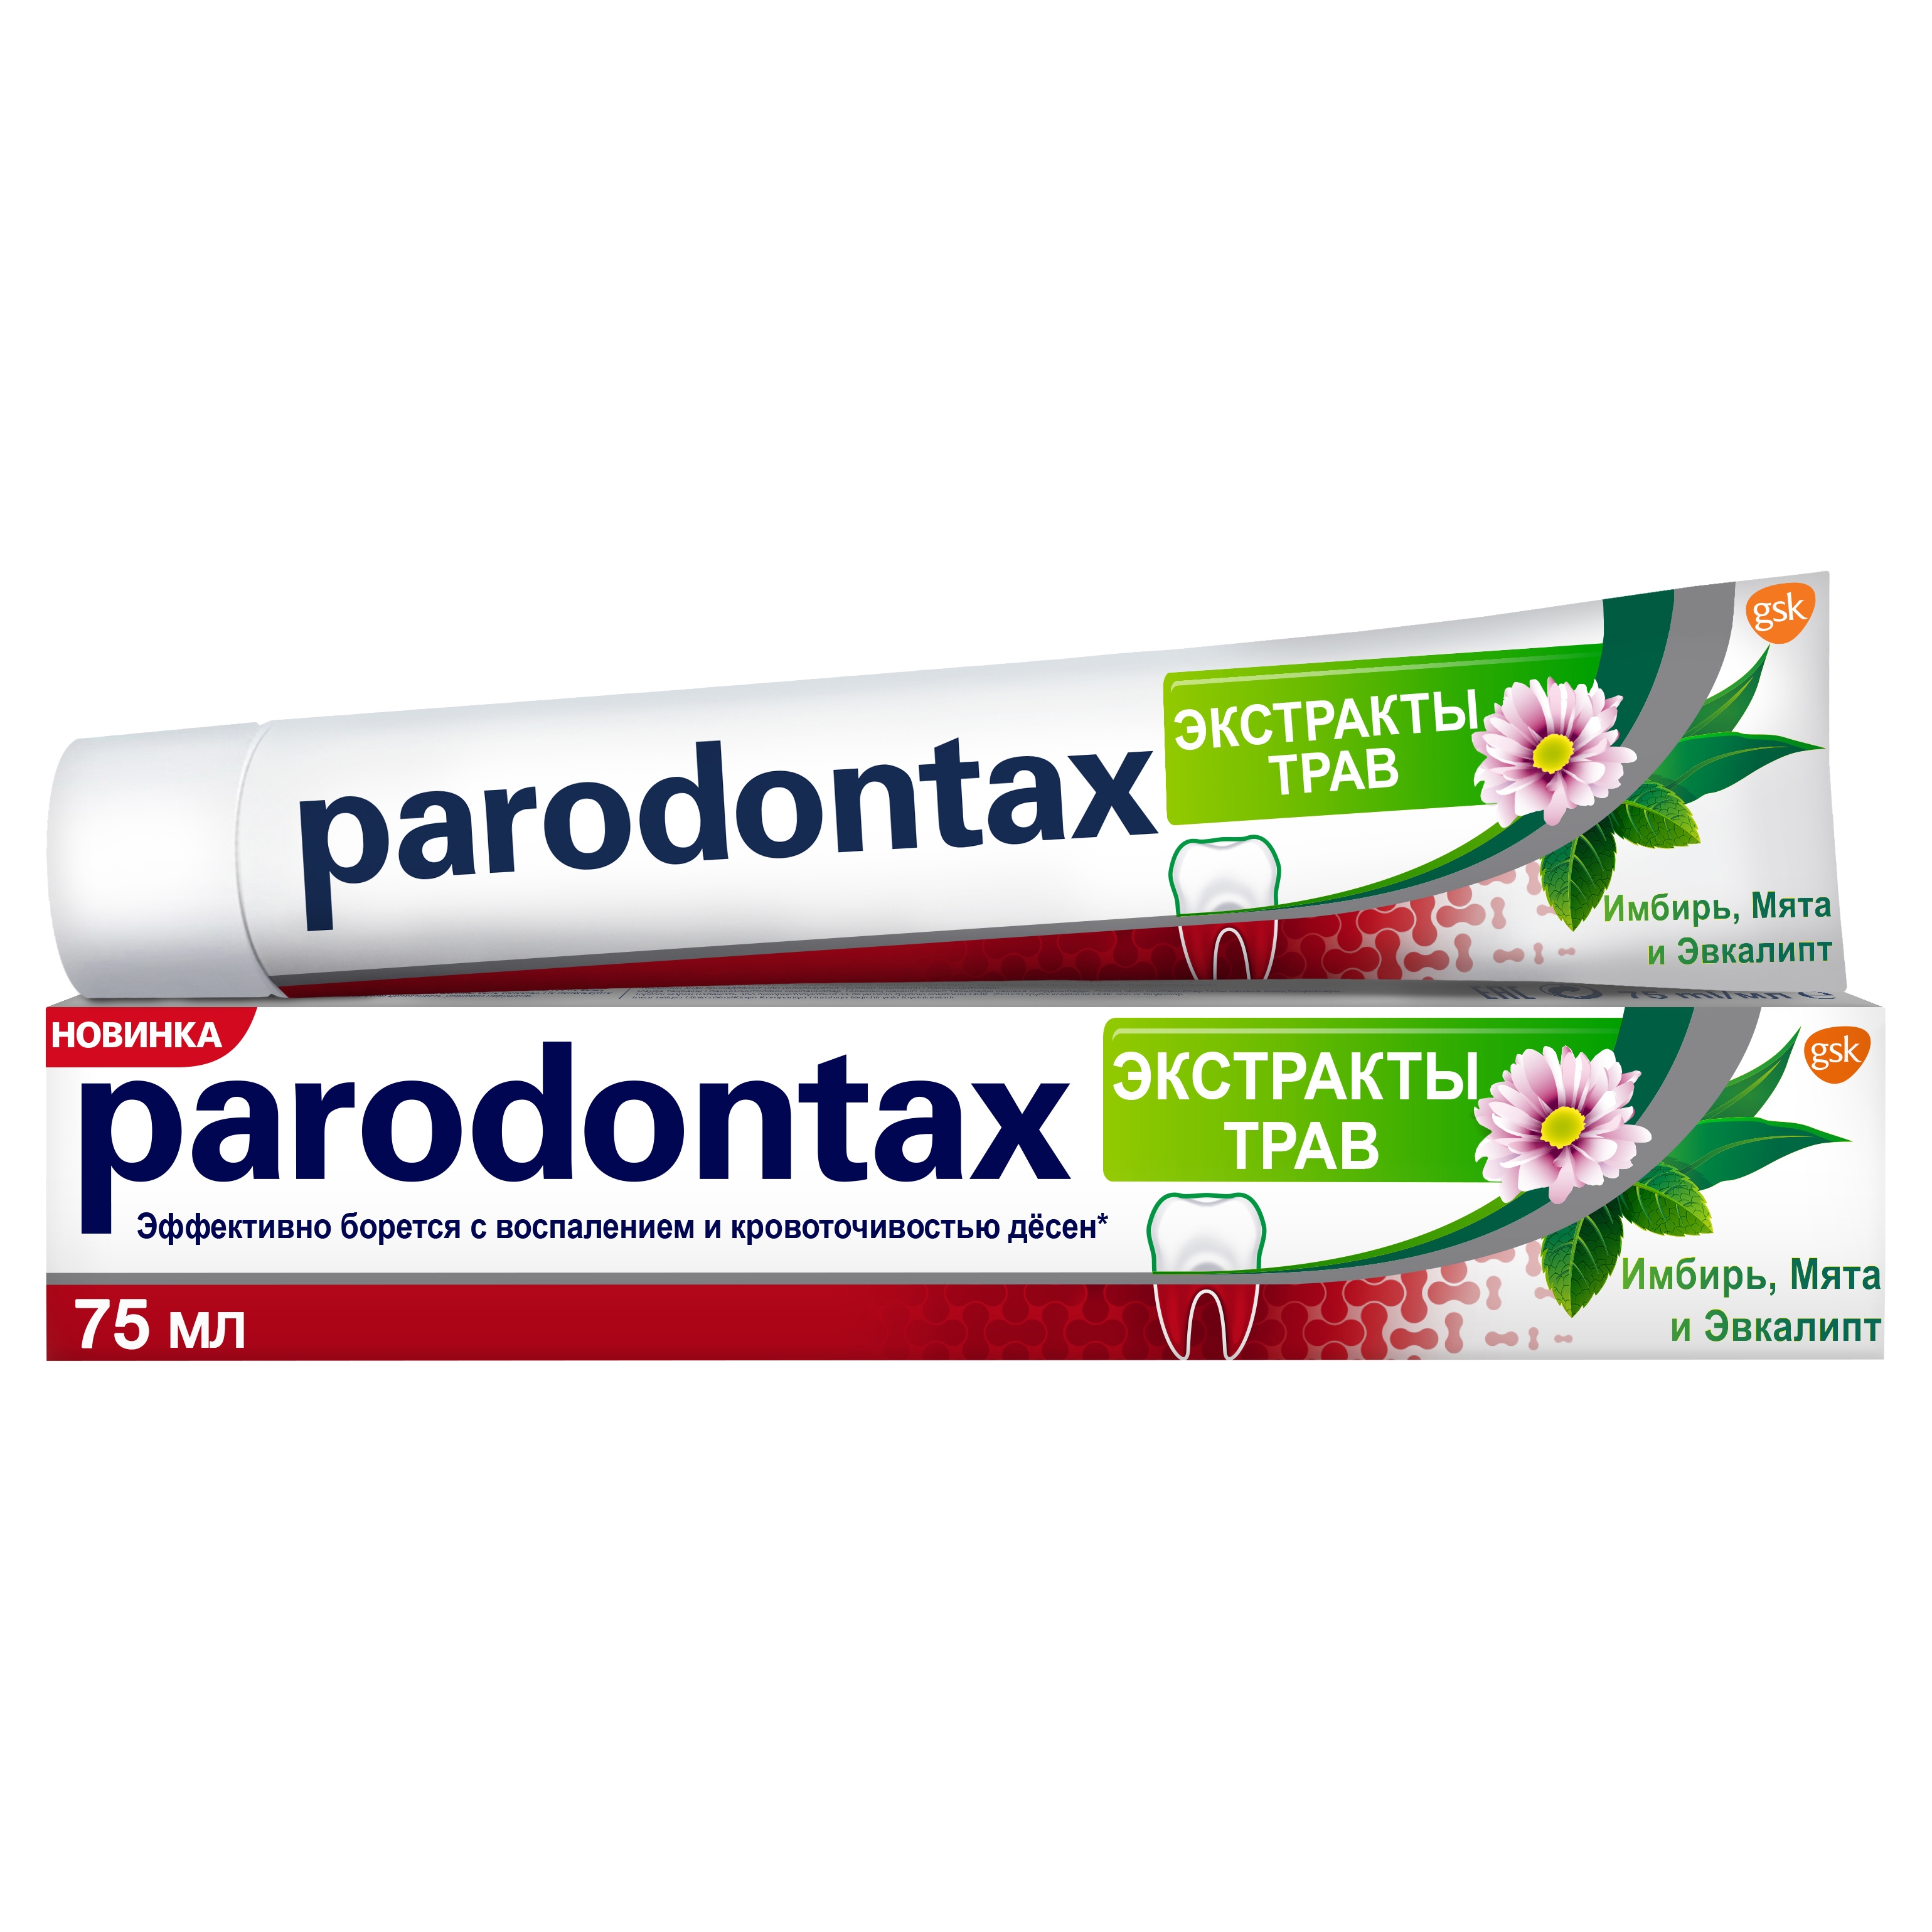 Зубная паста Parodontax Экстракты Трав 75 мл зубная паста parodontax без фтора 75 мл